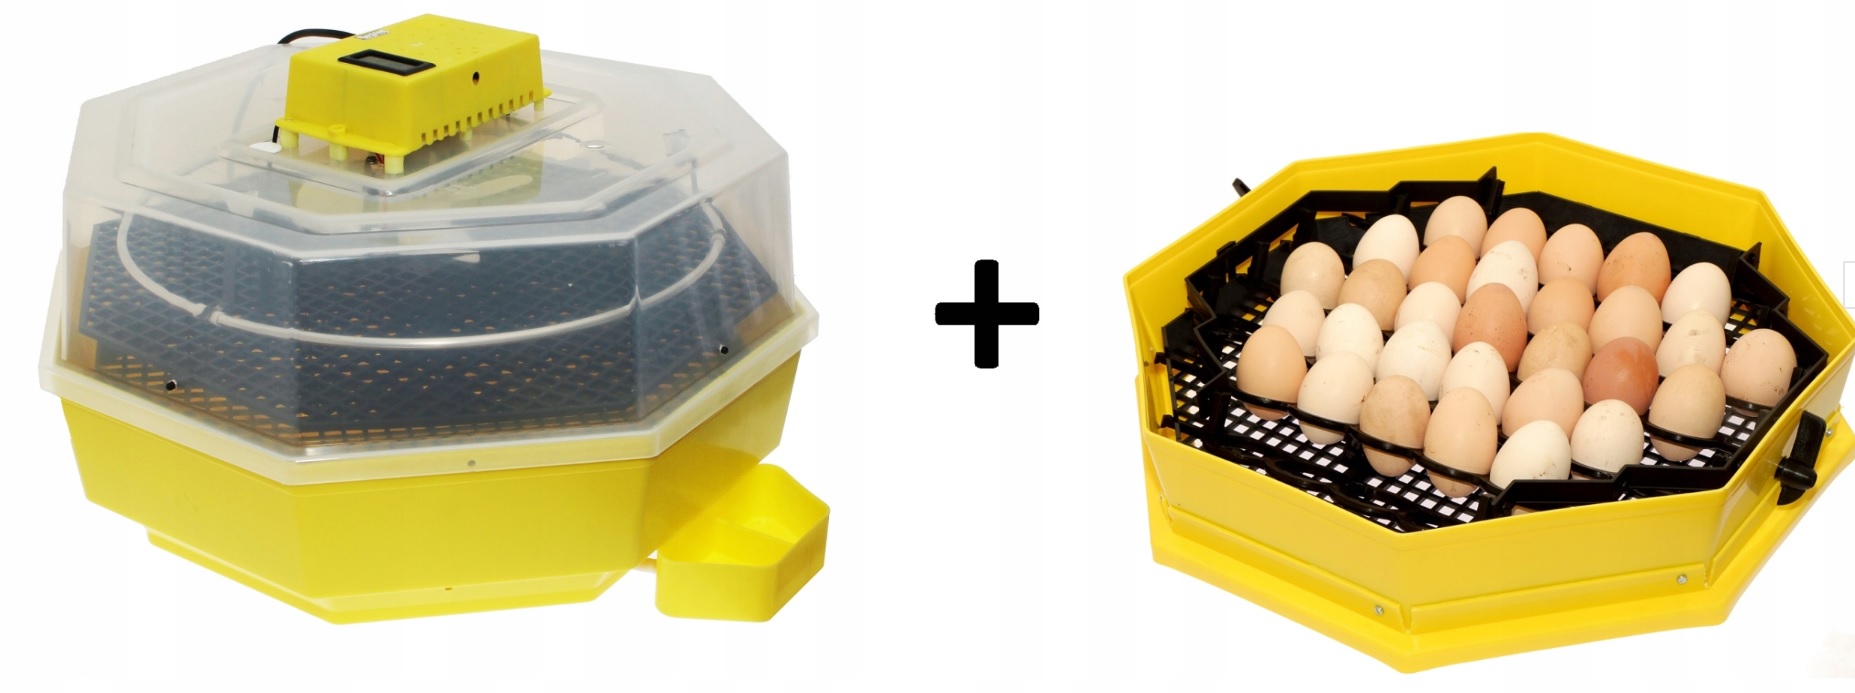 zobacz Inkubator na 60 jaj klujnik wyświetlacz + GRATIS moduł 